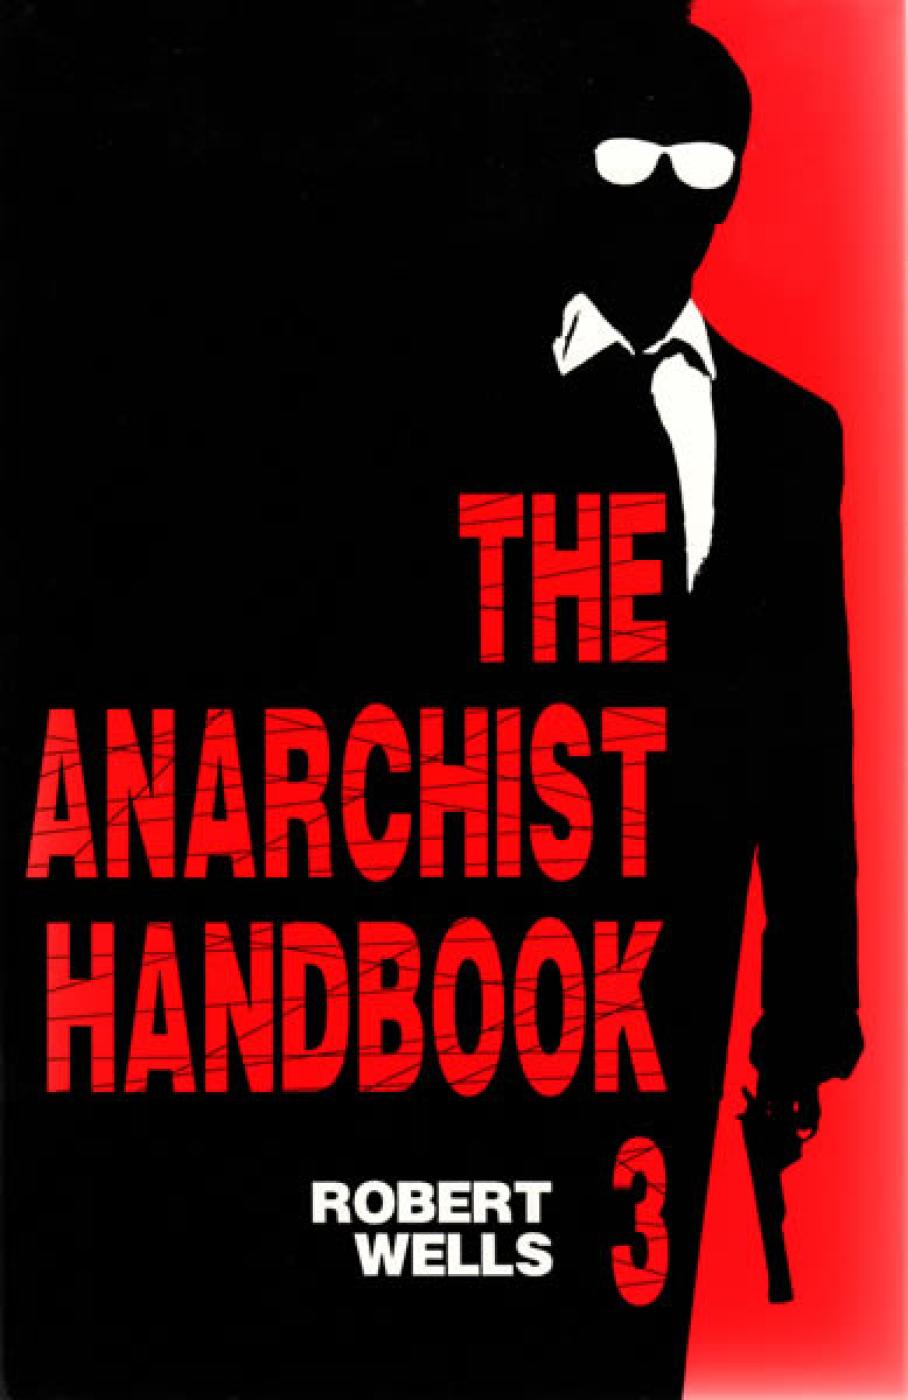 The Anarchist Handbook Volume 1